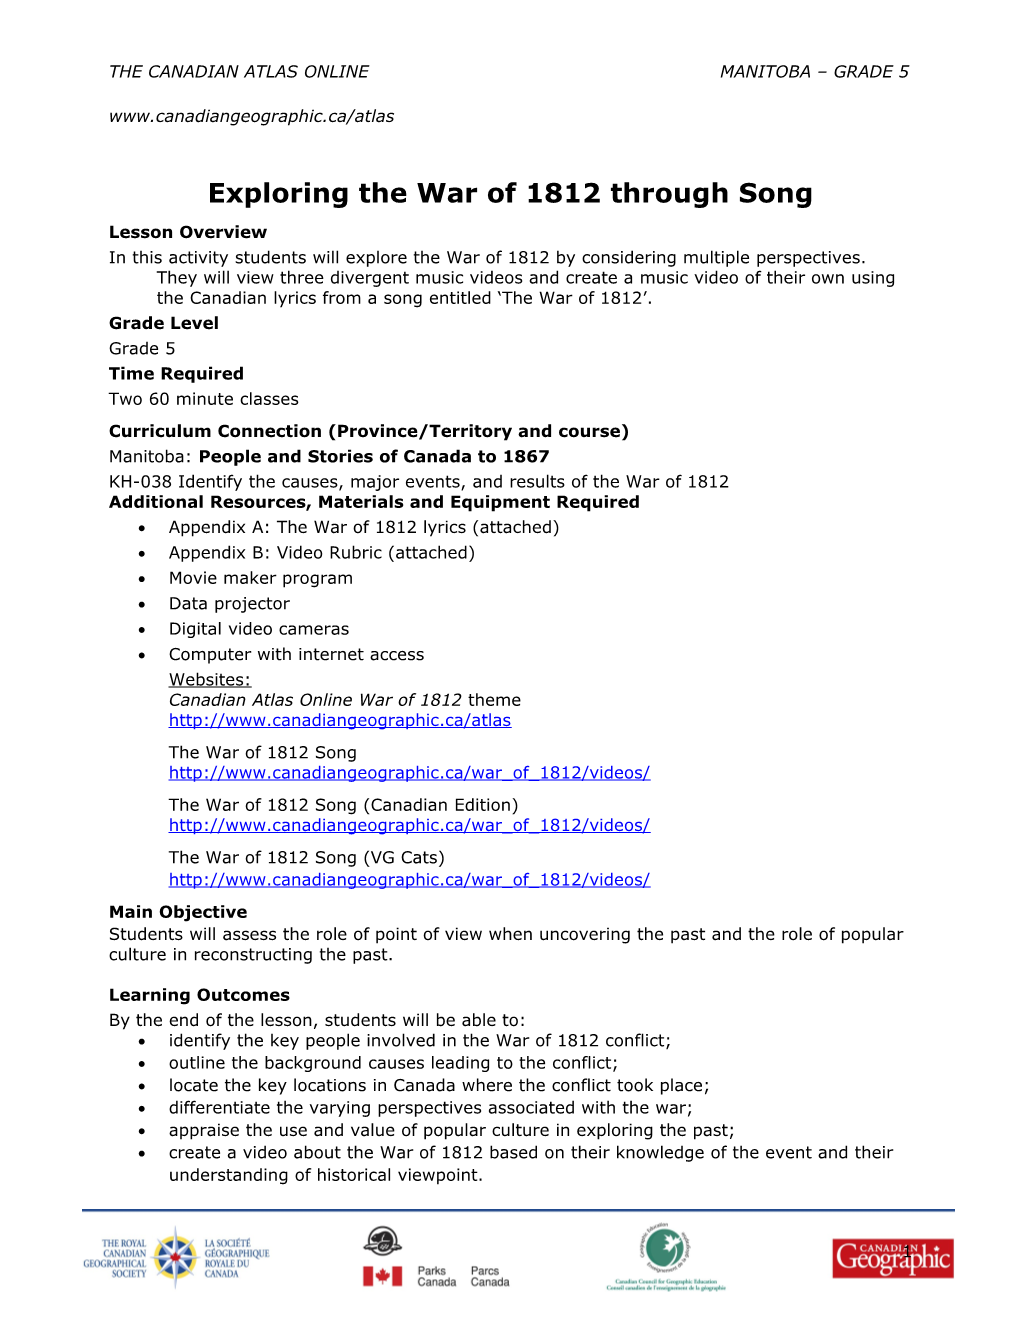 Exploring the War of 1812 Through Song